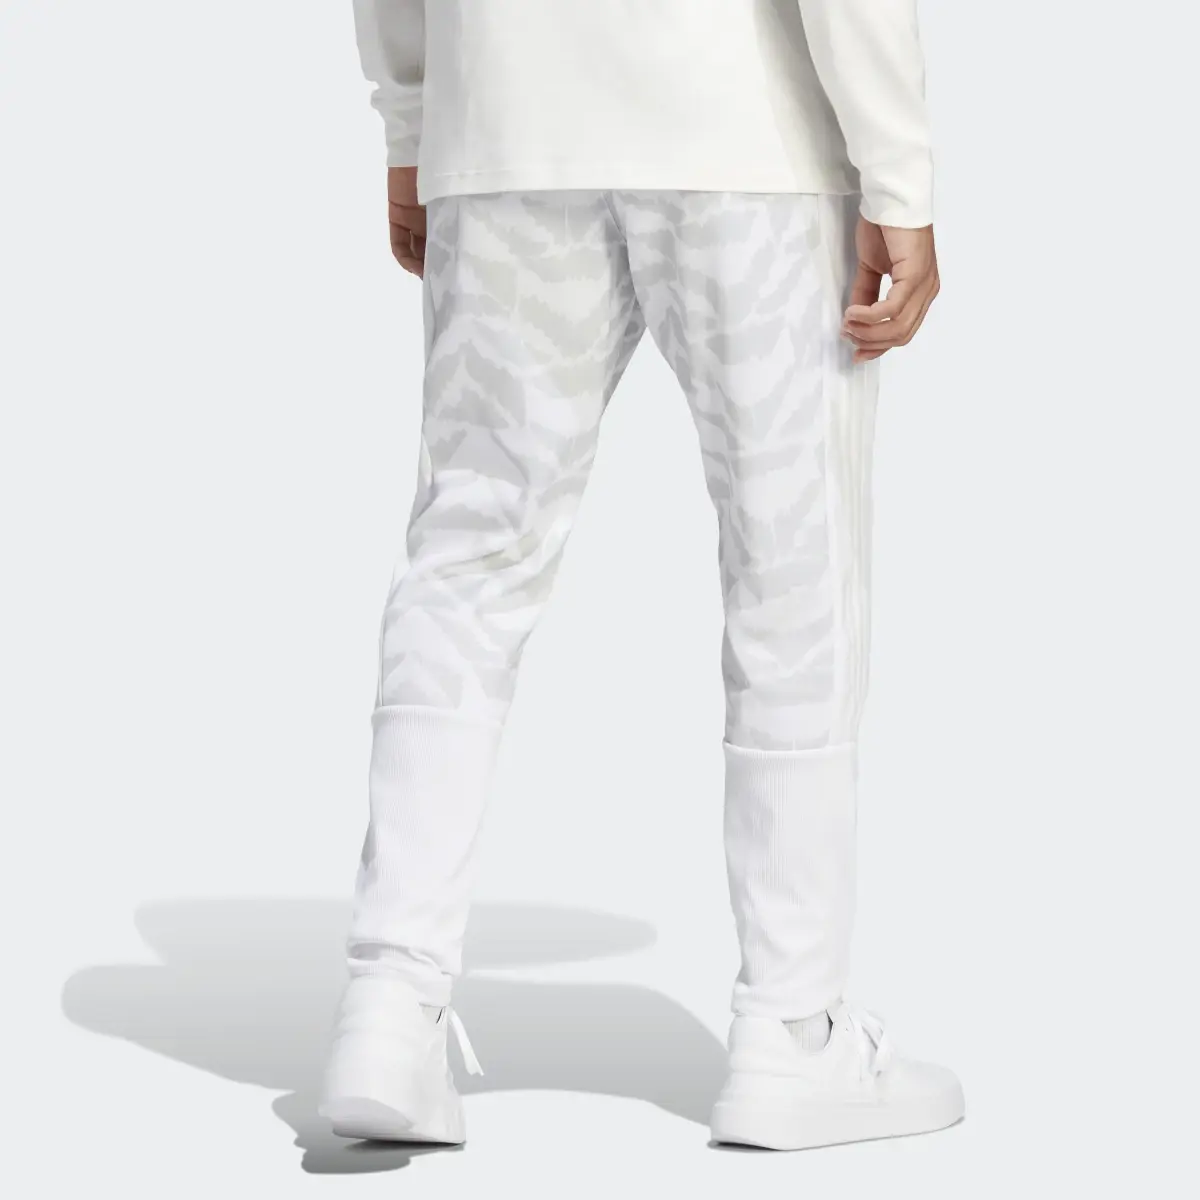 Adidas Pantalon de survêtement Tiro Suit-Up Lifestyle. 2